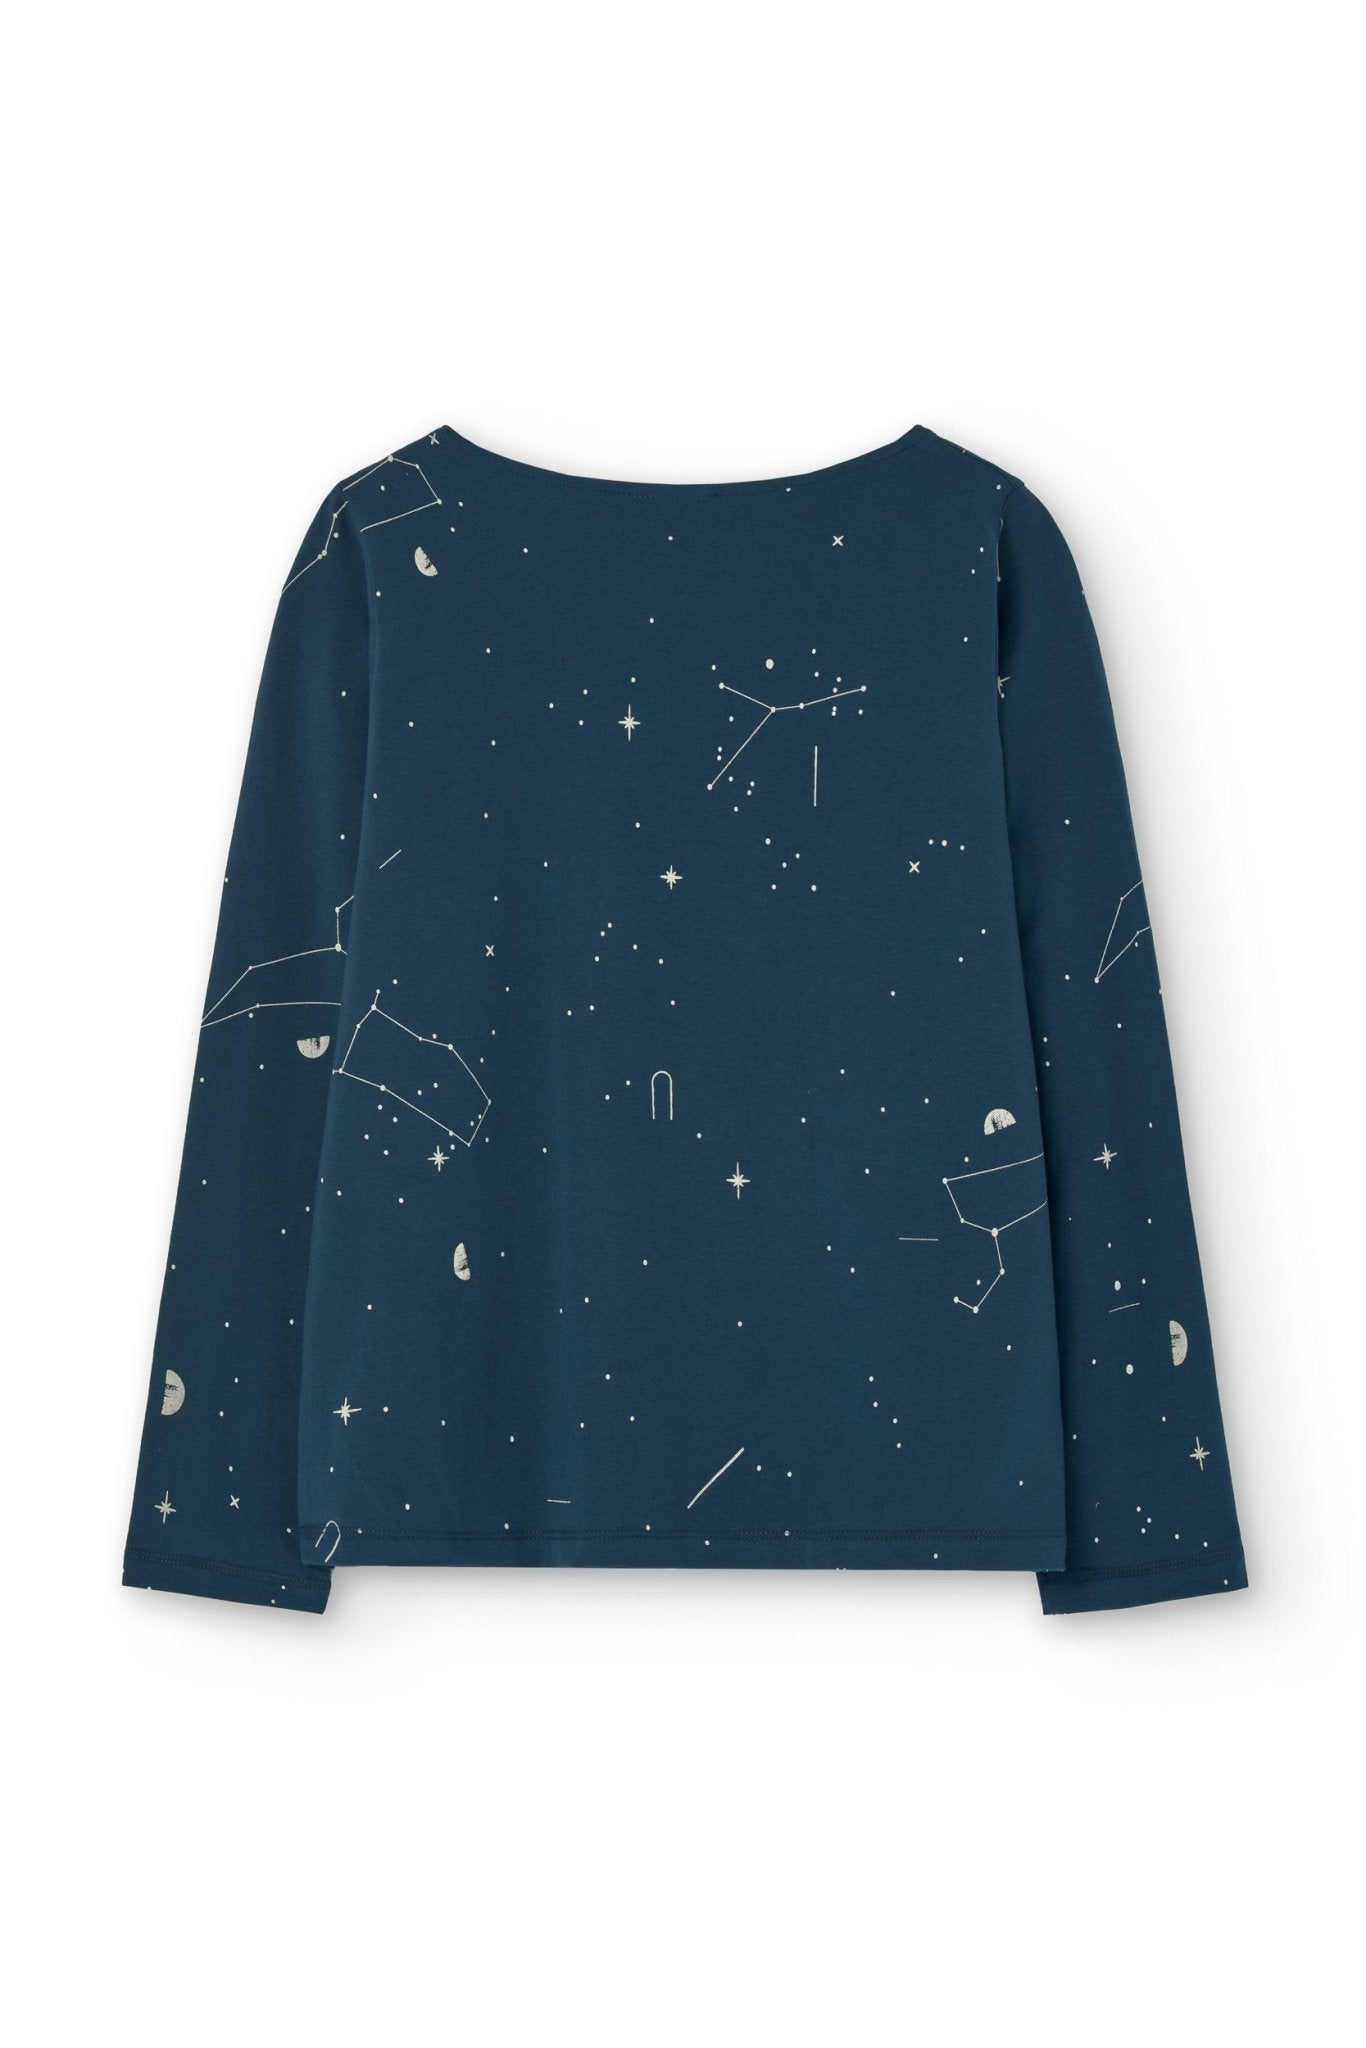 Gaia basic T-shirt blue constellations - TIRALAHILACHA